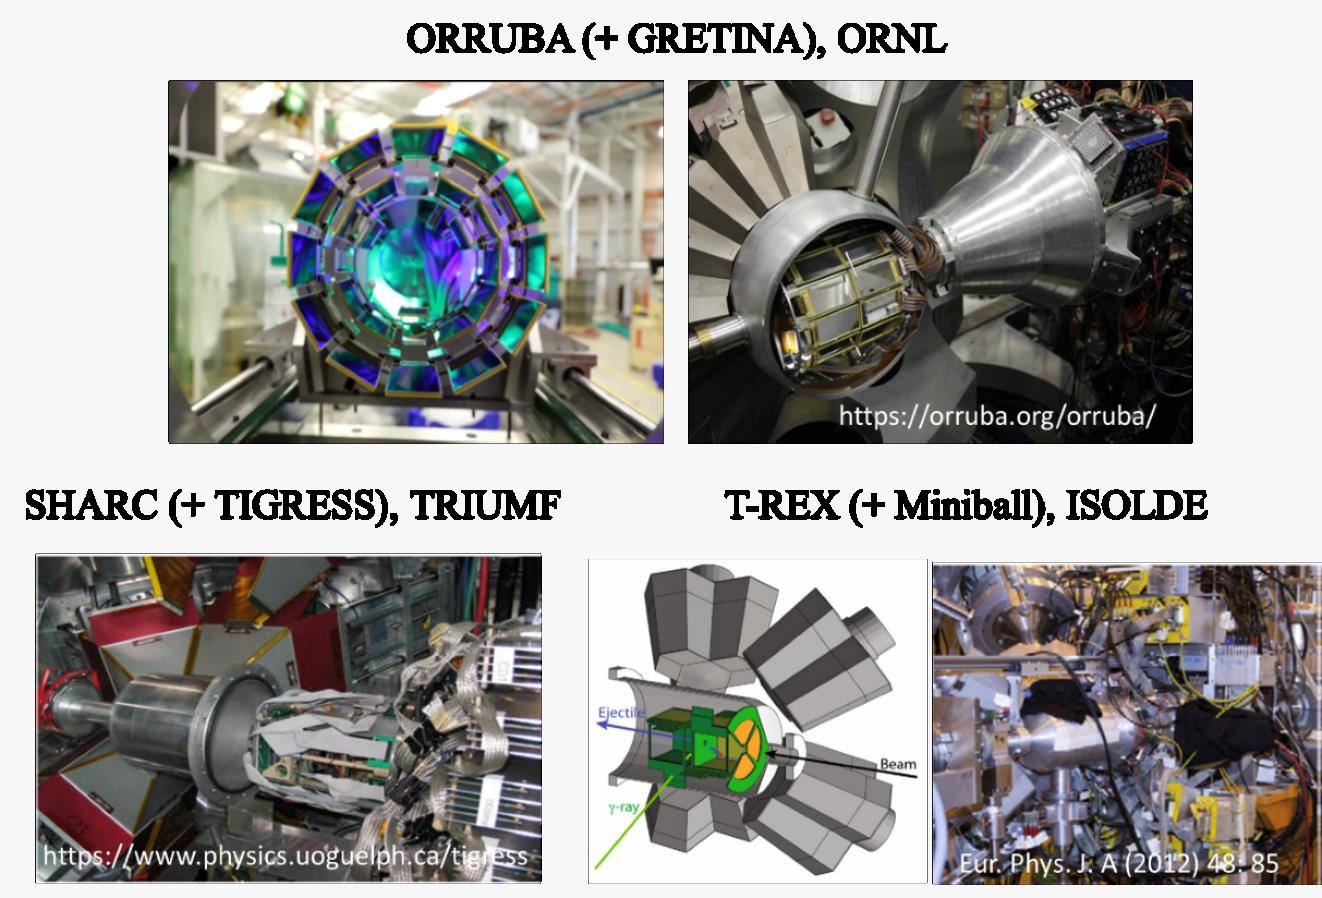 ORRUBA (+ GRETINA), ORNL SHARC(+TIGRESS), TRIUMF , T-REX(+Miniball), ISOLDE